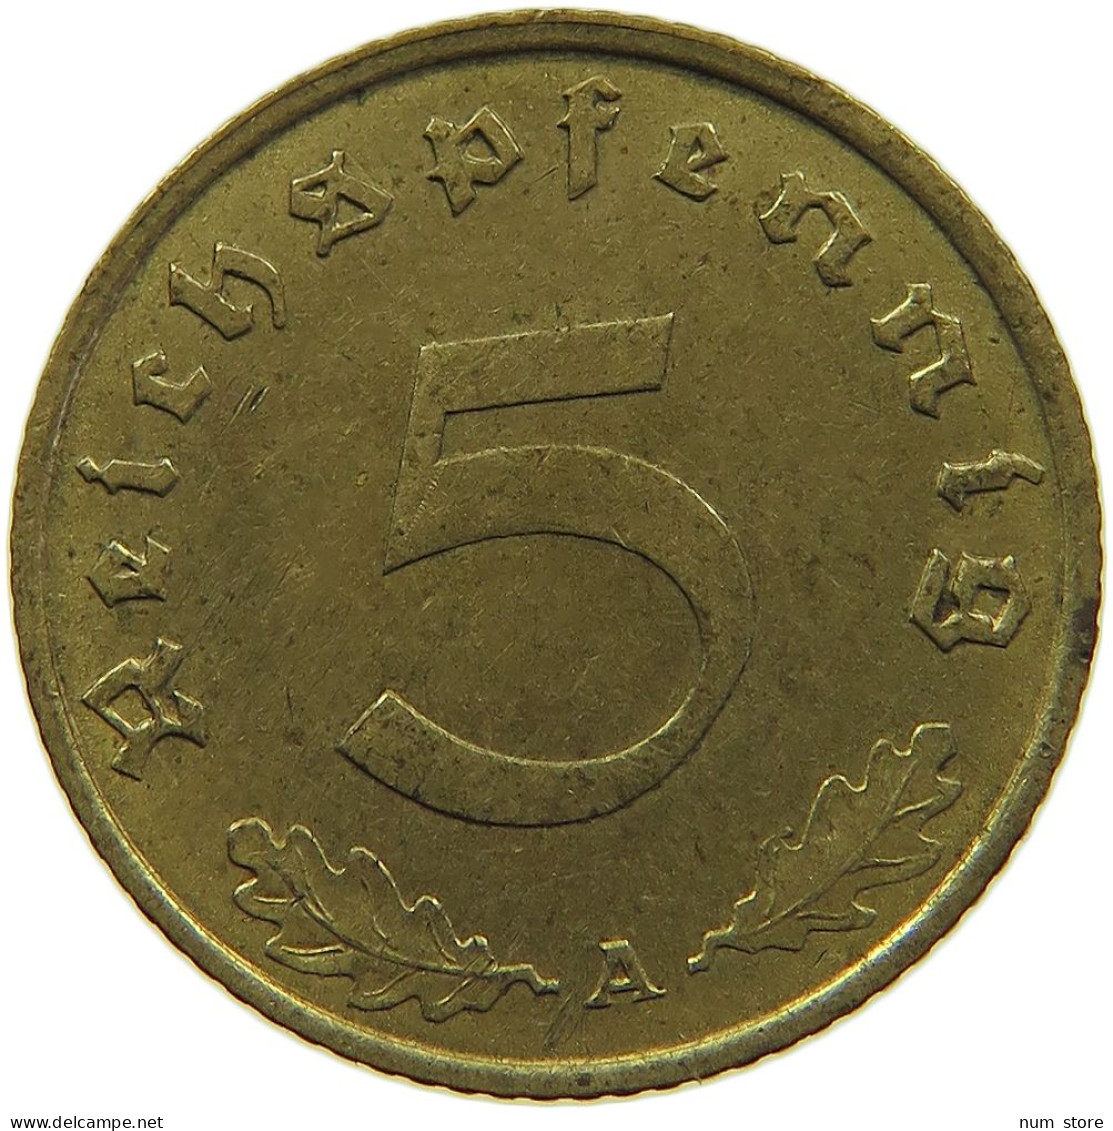 GERMANY 5 REICHSPFENNIG 1939 A #s091 0733 - 5 Reichspfennig